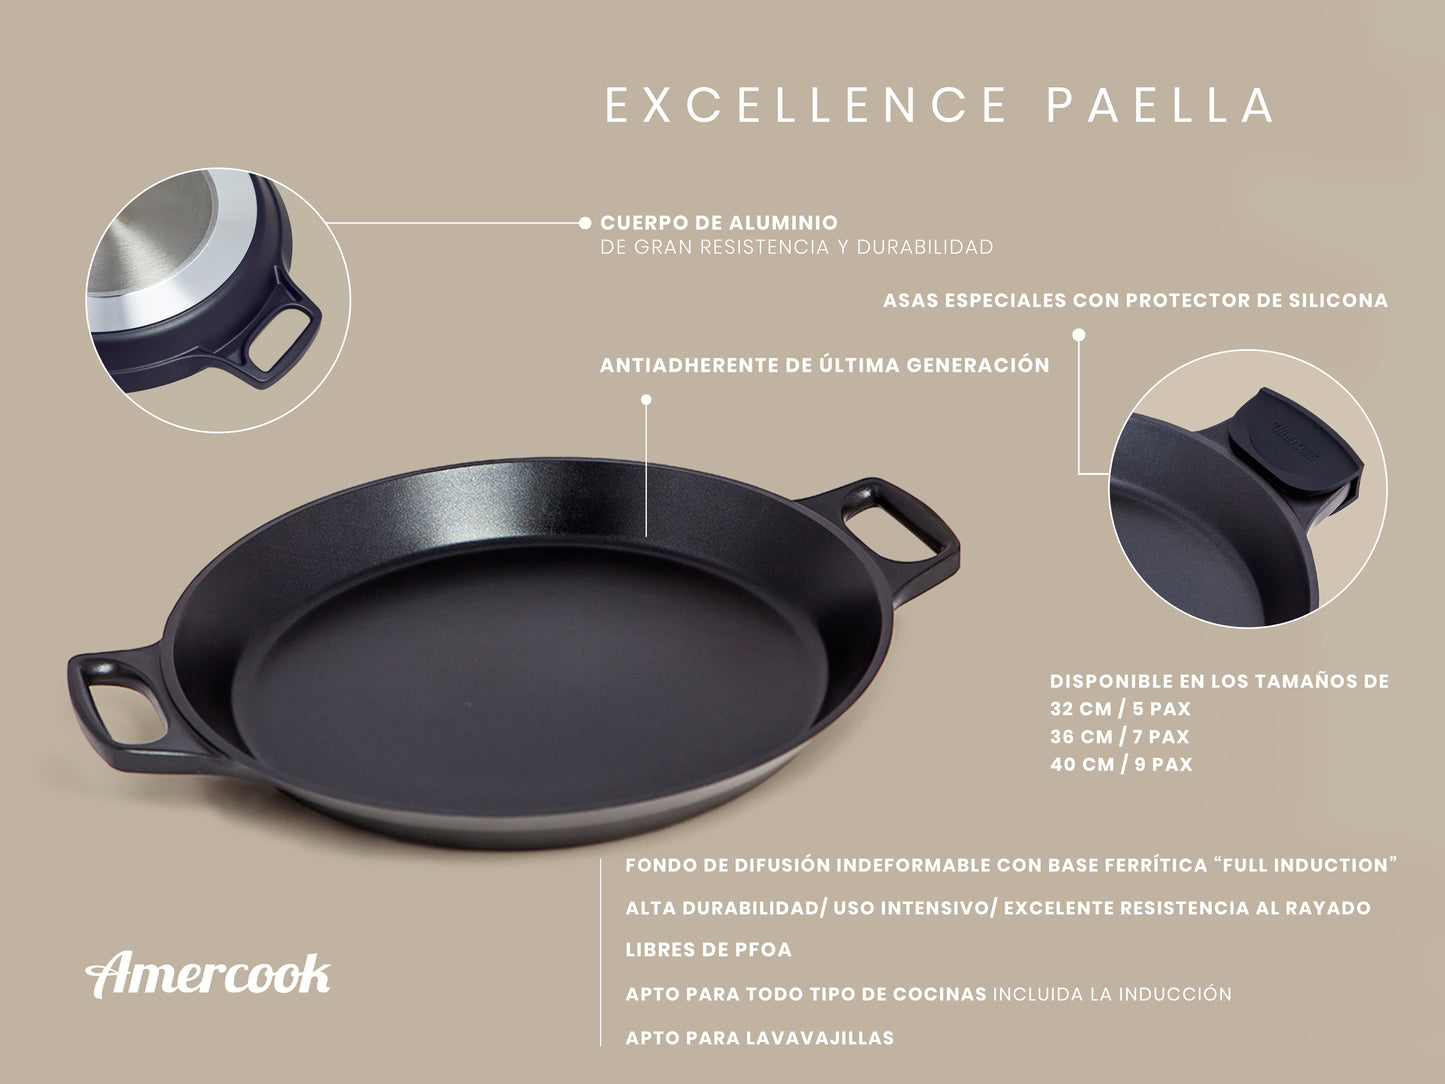 Paella Excellence Premium apta para todo tipo de cocinas, incluso inducción